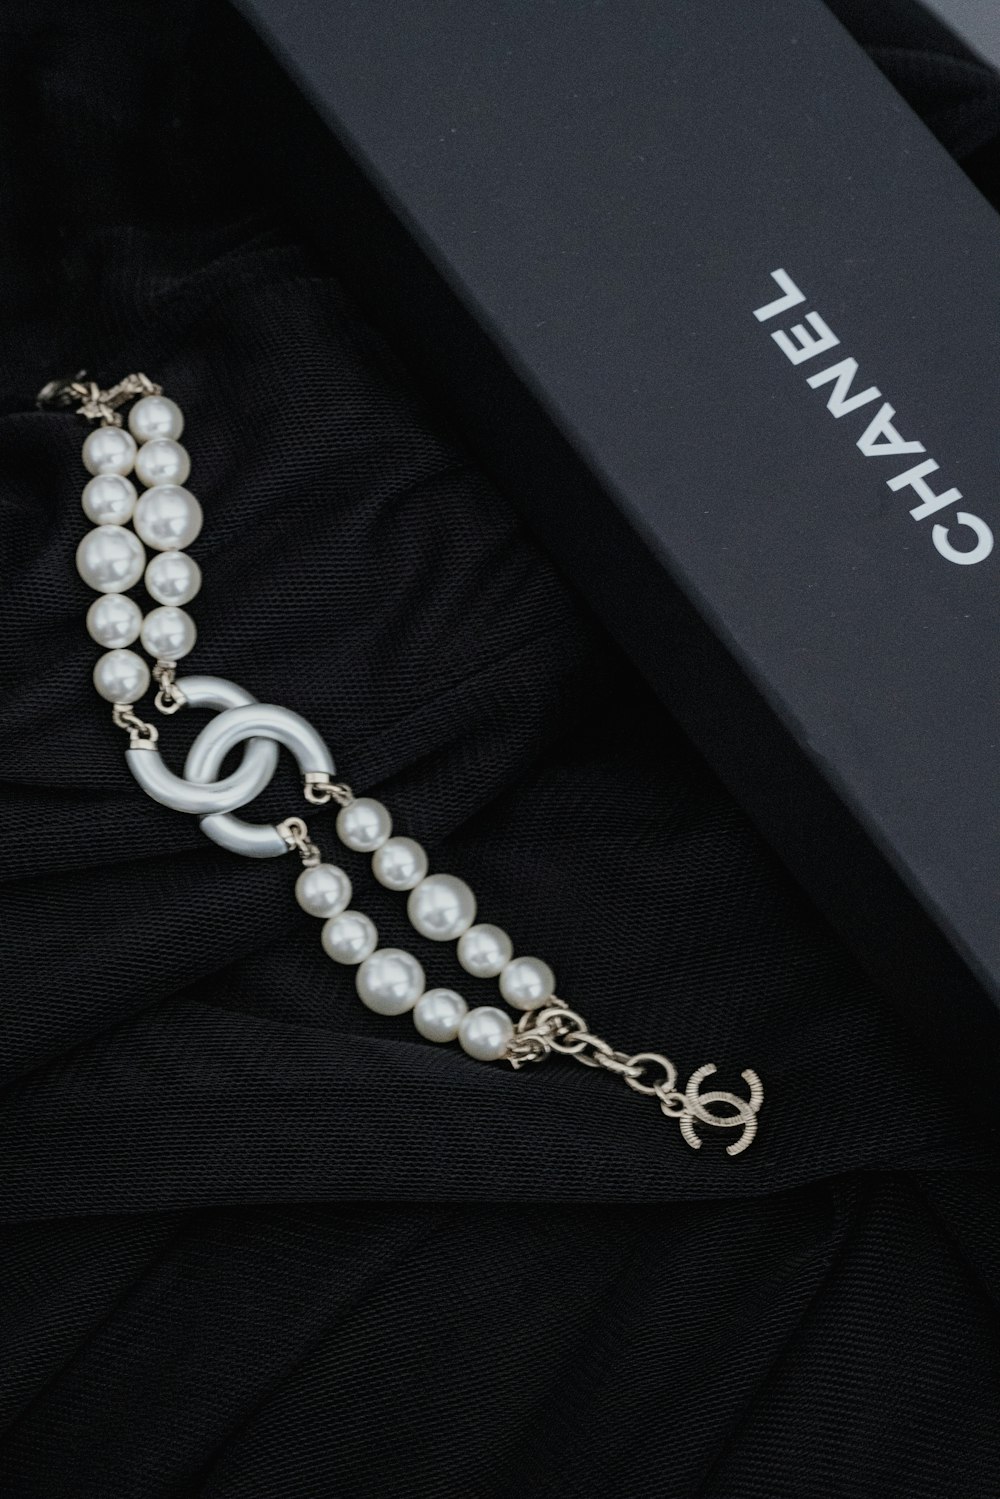 Una caja negra con un collar y perlas